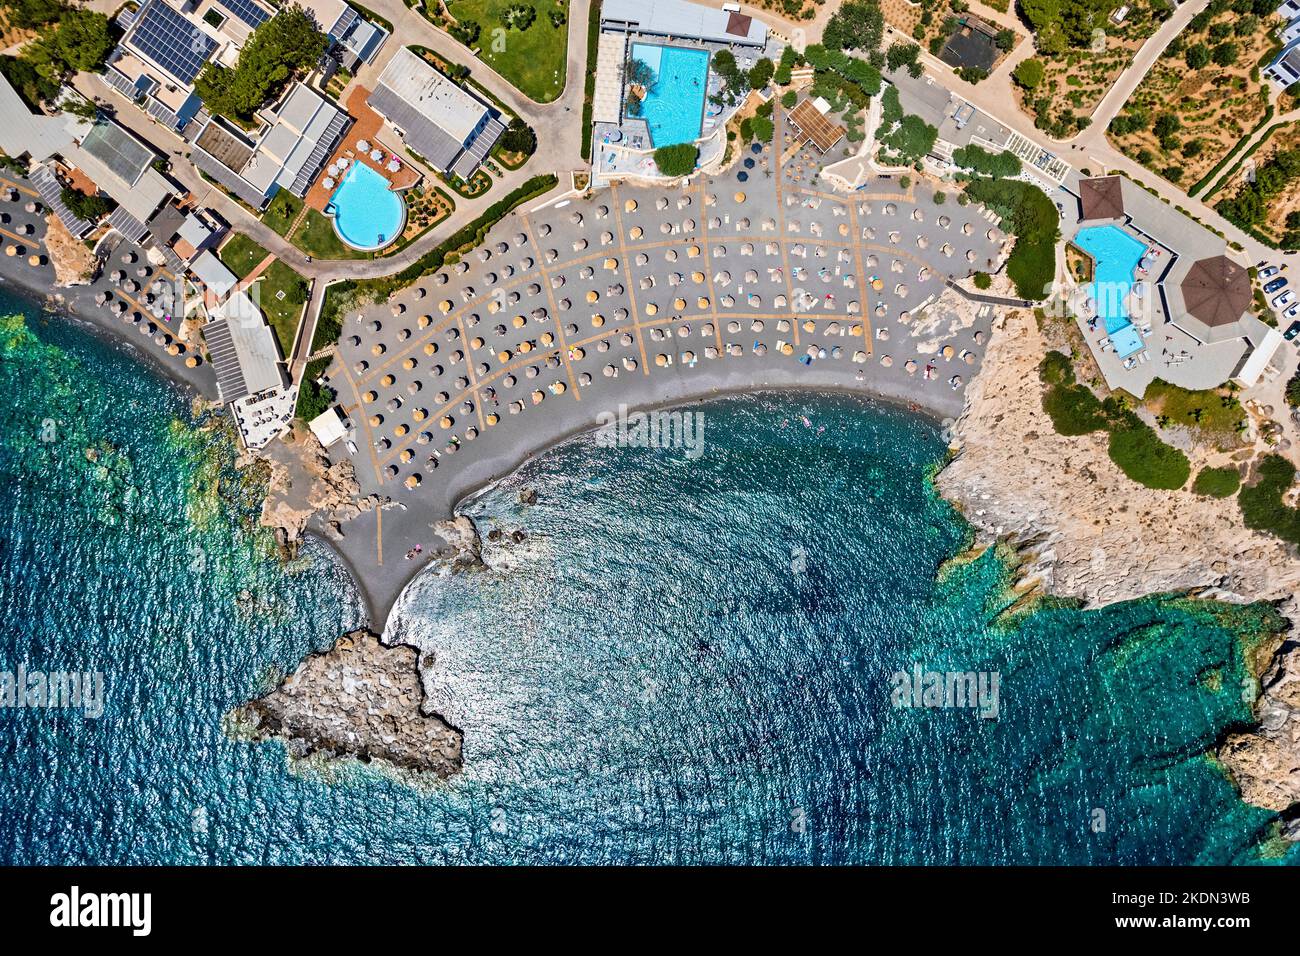 Vista aérea (drone) de la playa de la bahía de Kakkos (bandera azul concedida), entre los pueblos de Ferma y Koutsounari, Ierapetral, Lassithi, Creta, Grecia. Foto de stock